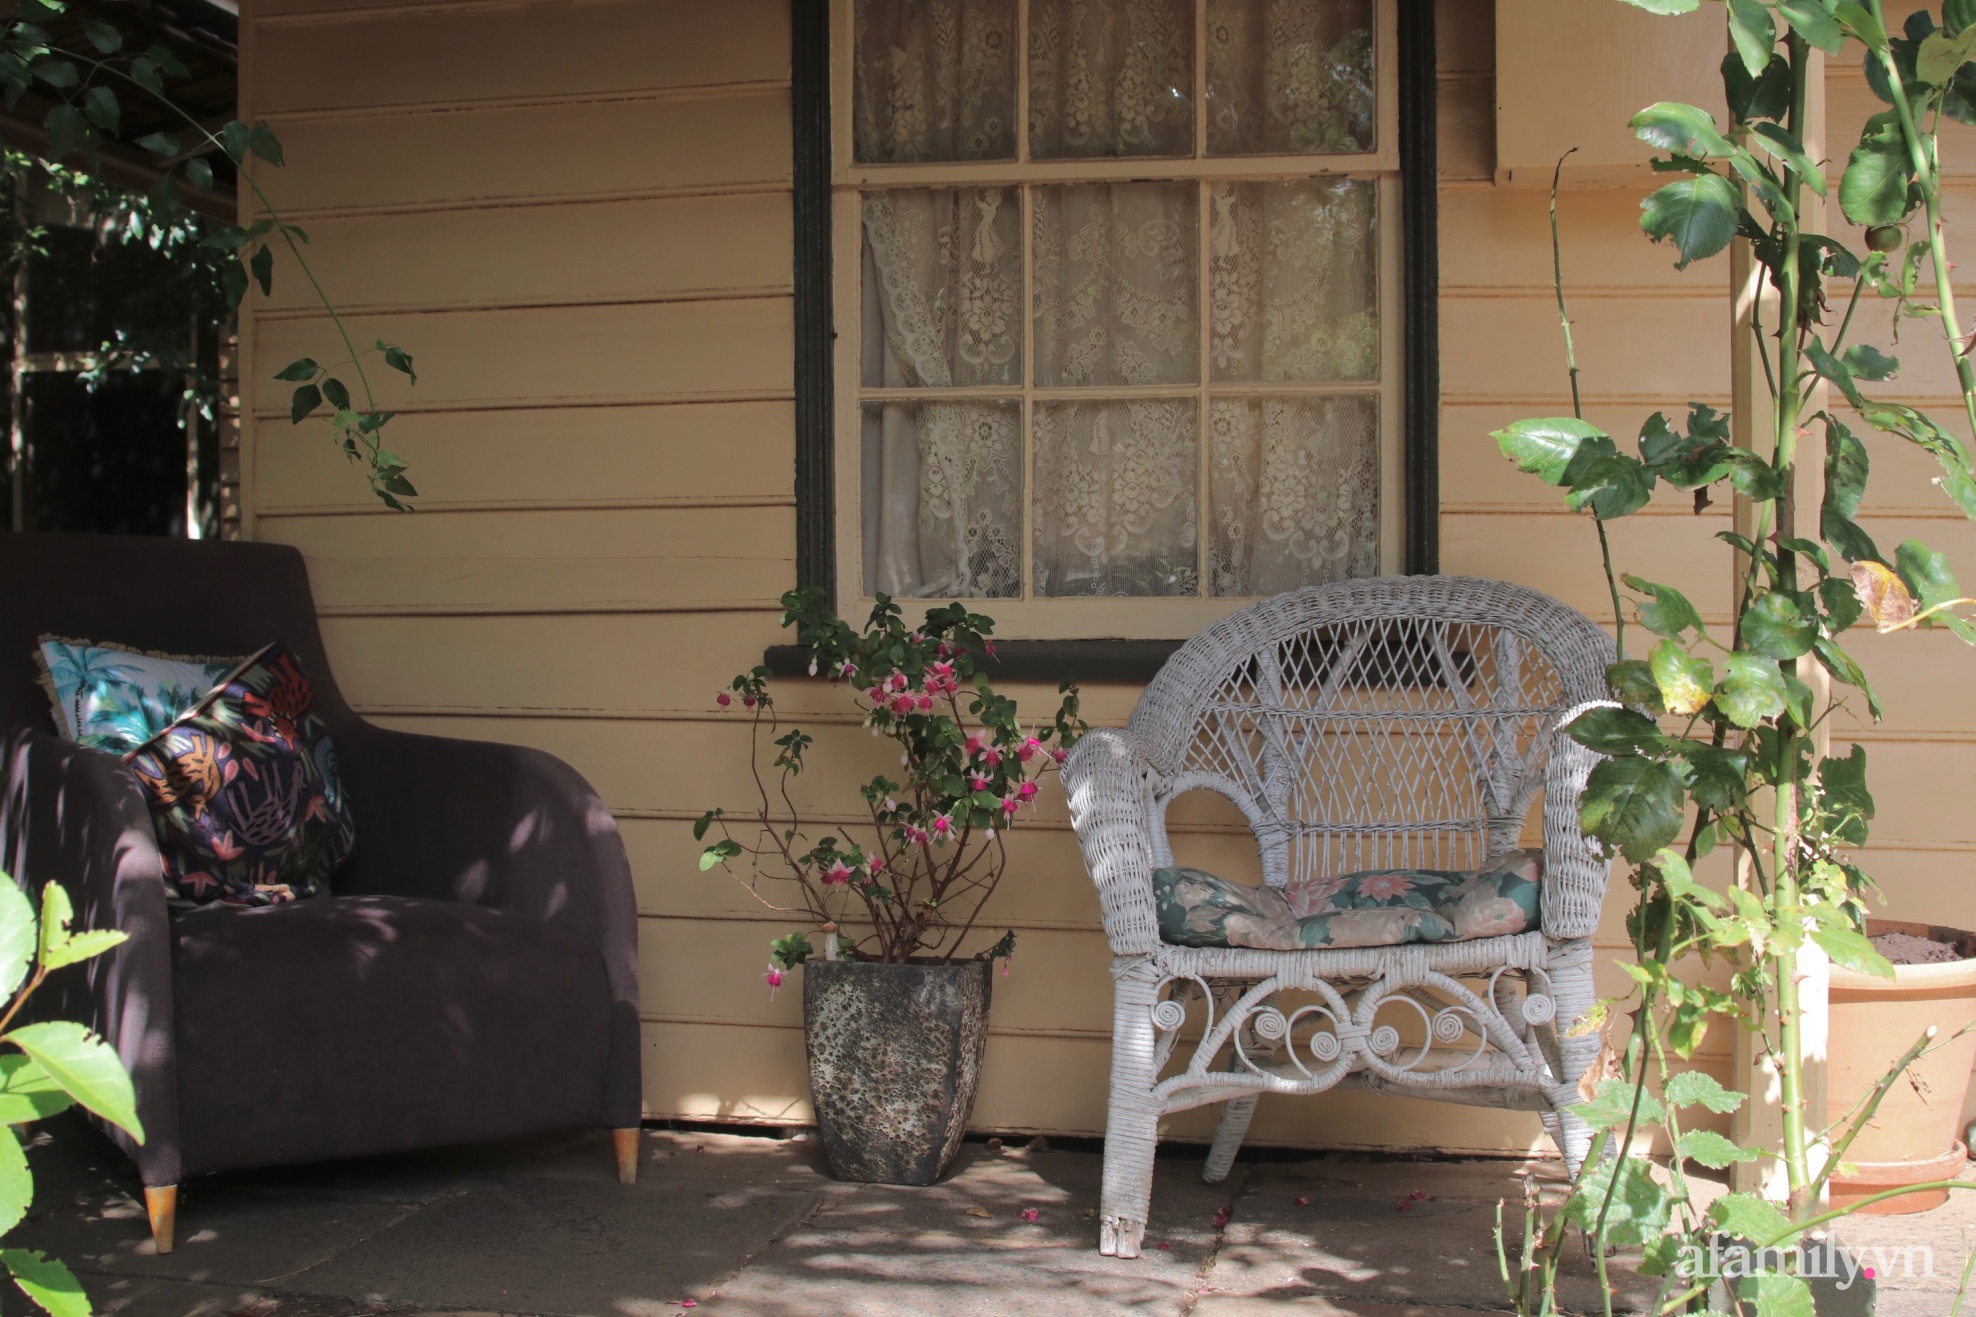 Căn nhà cổ xây cách đây 160 năm đẹp bình yên giữa vườn cây xanh mát ở Úc - Ảnh 8.